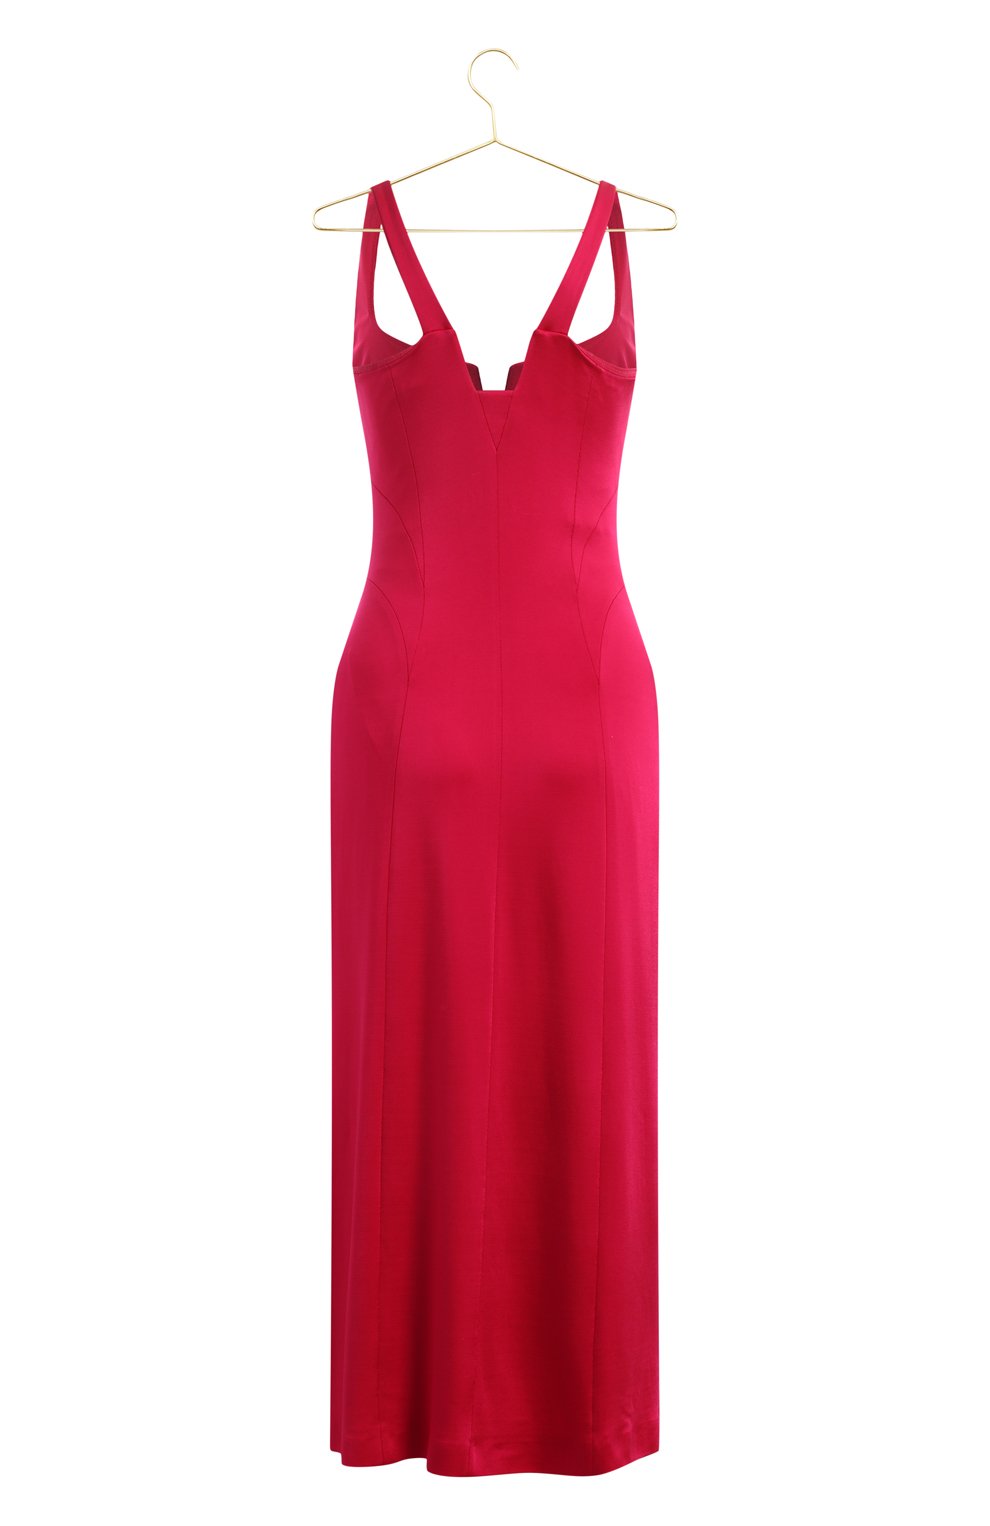 Платье из вискозы | Galvan London | Розовый - 2